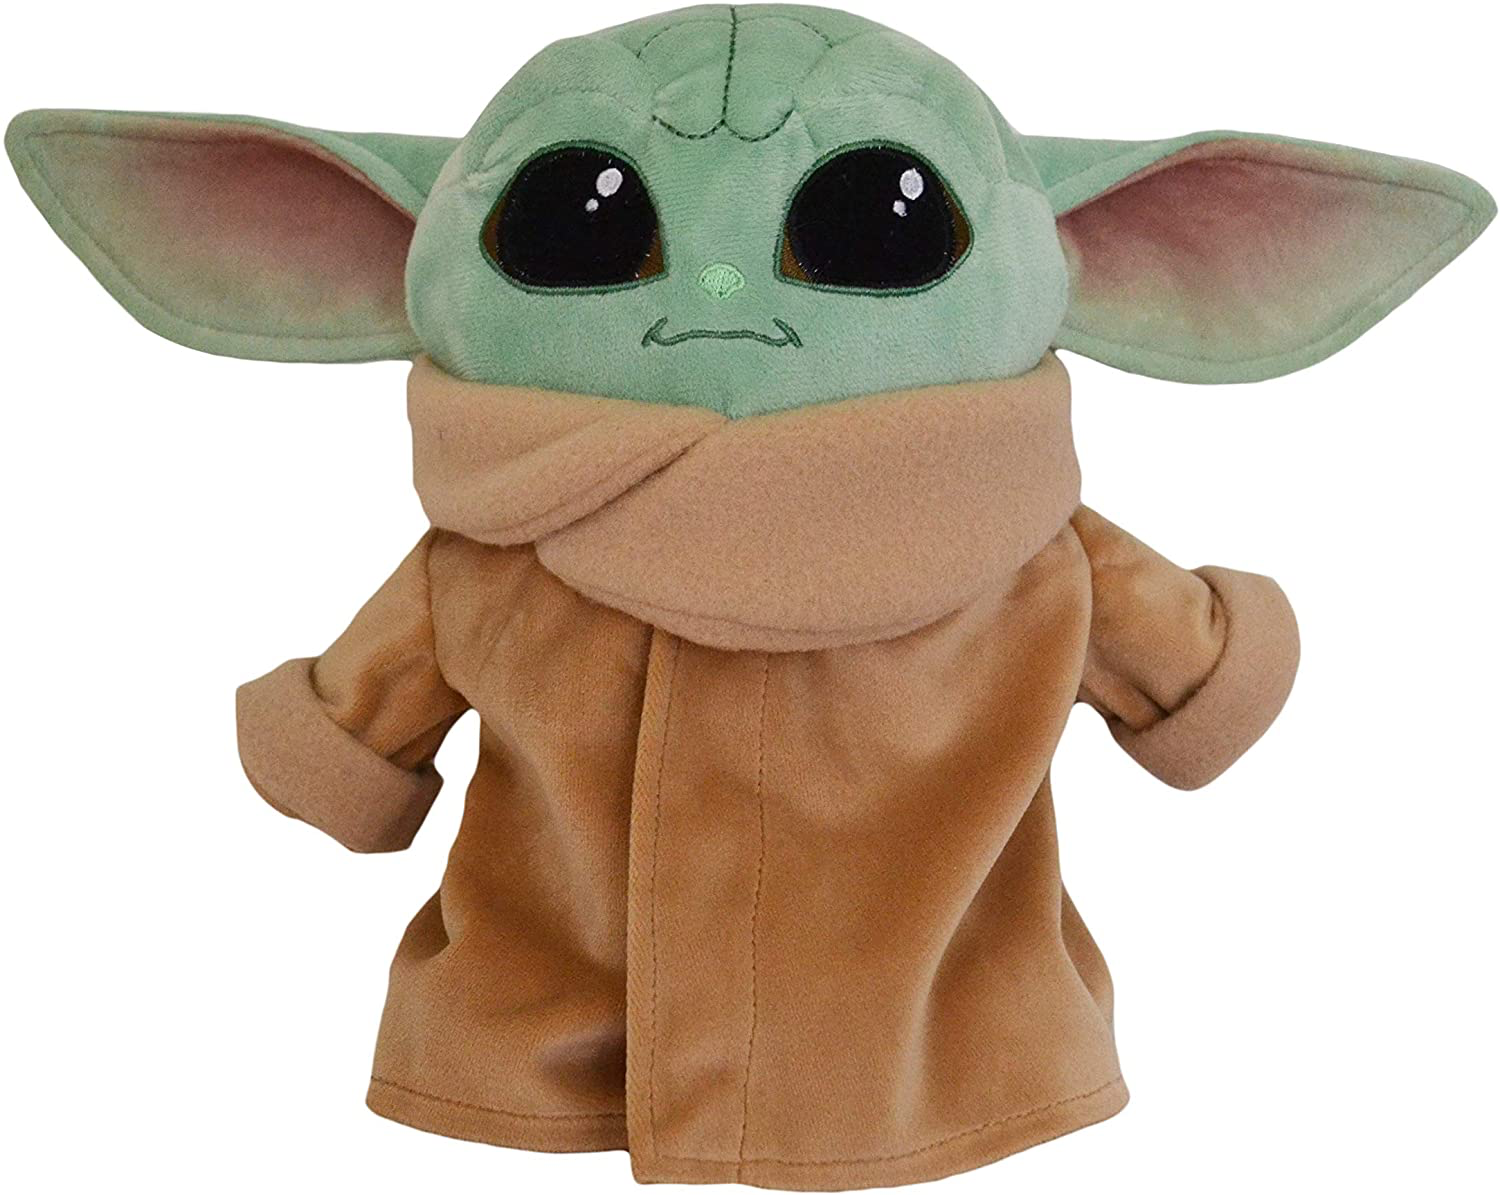 TM Baby Yoda (The Child) Plush Toy 2